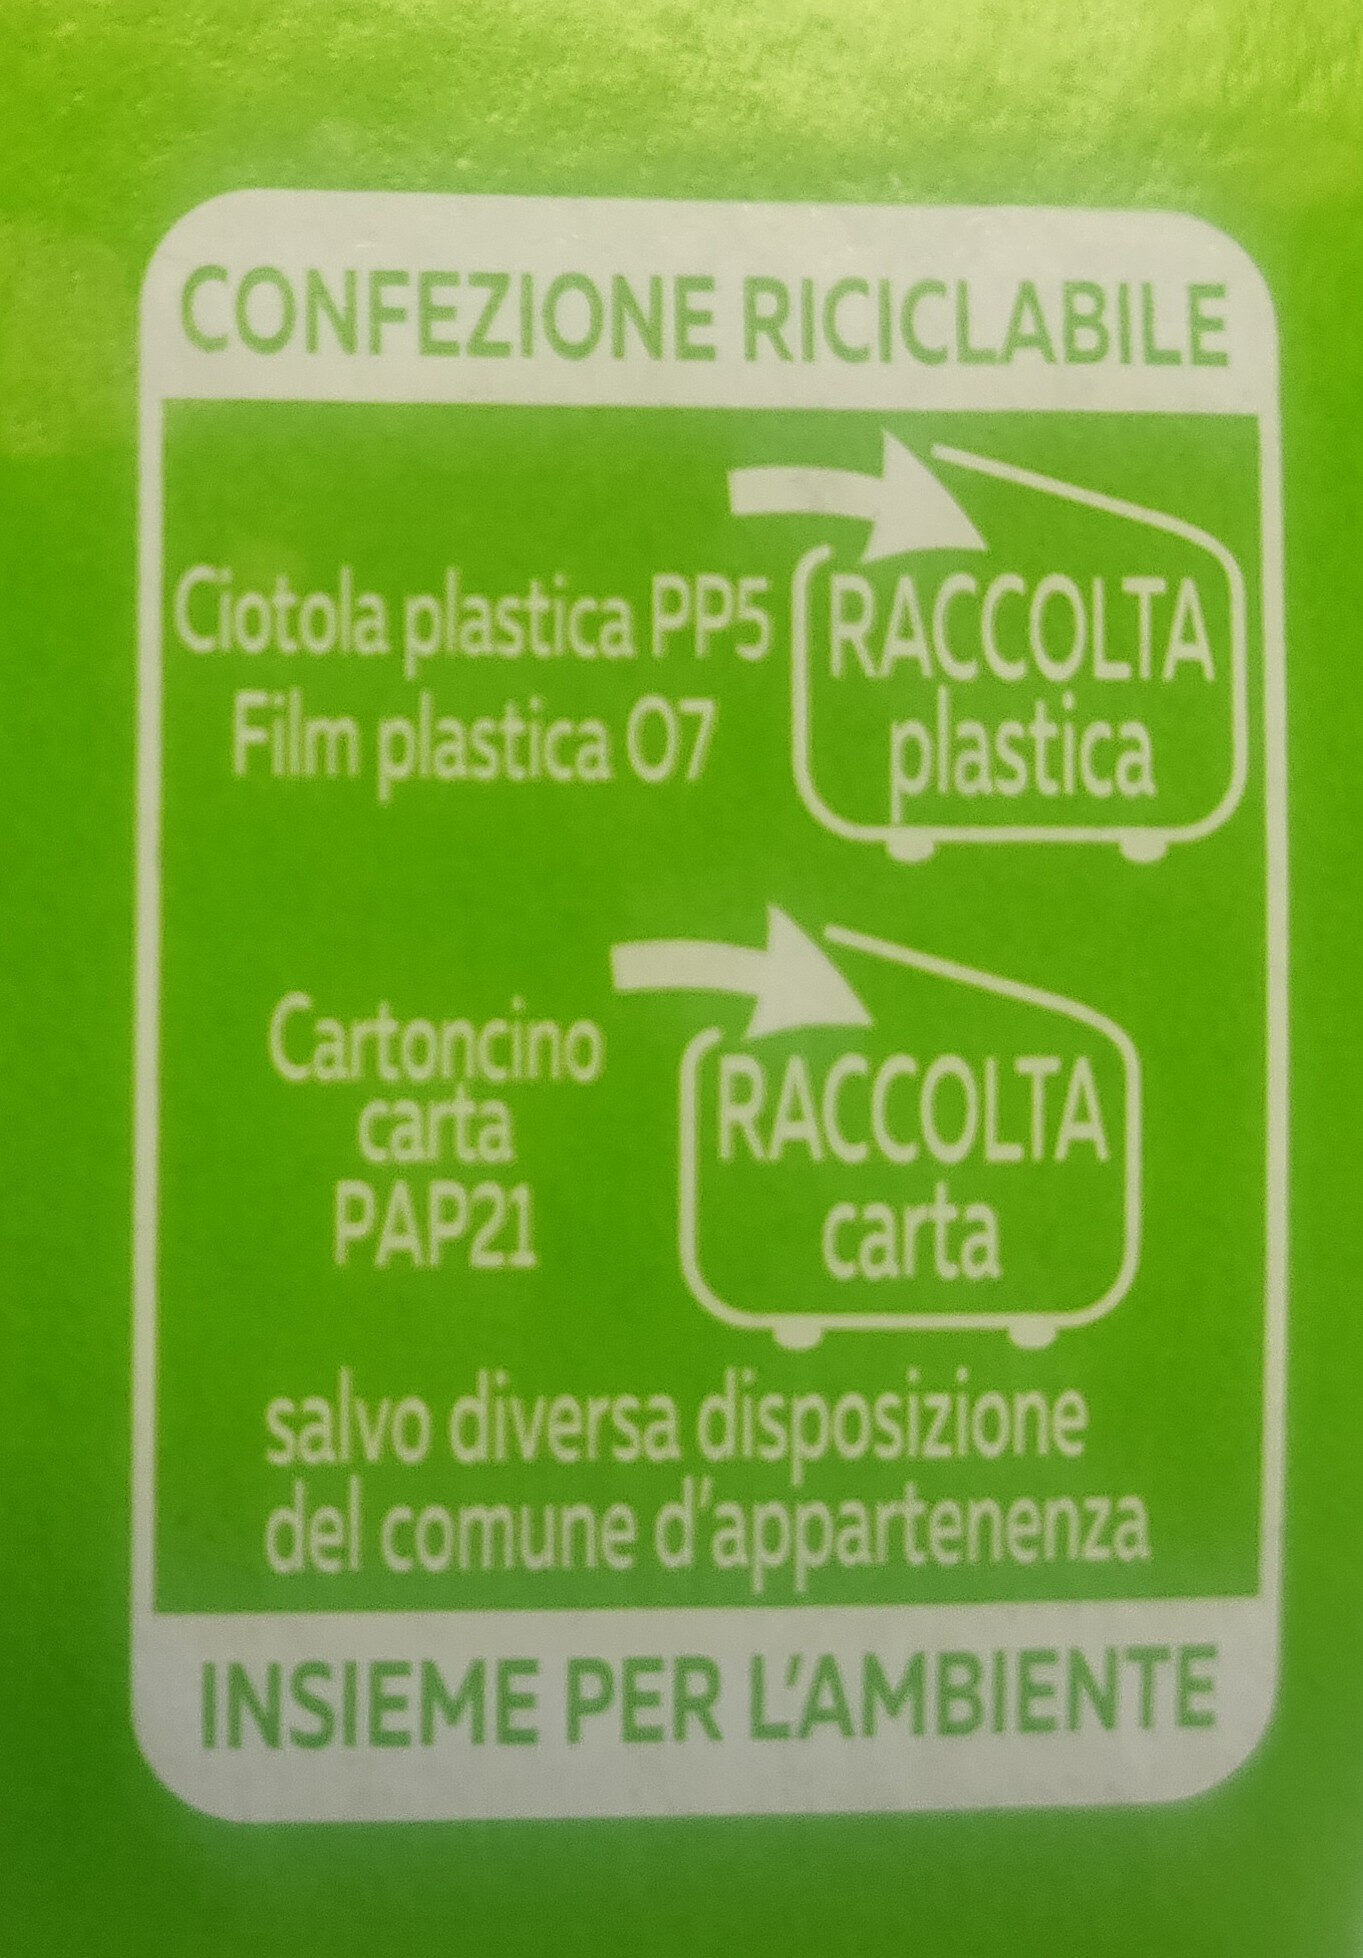 Minestrone di verdure con soia edamame - Instruction de recyclage et/ou informations d'emballage - it